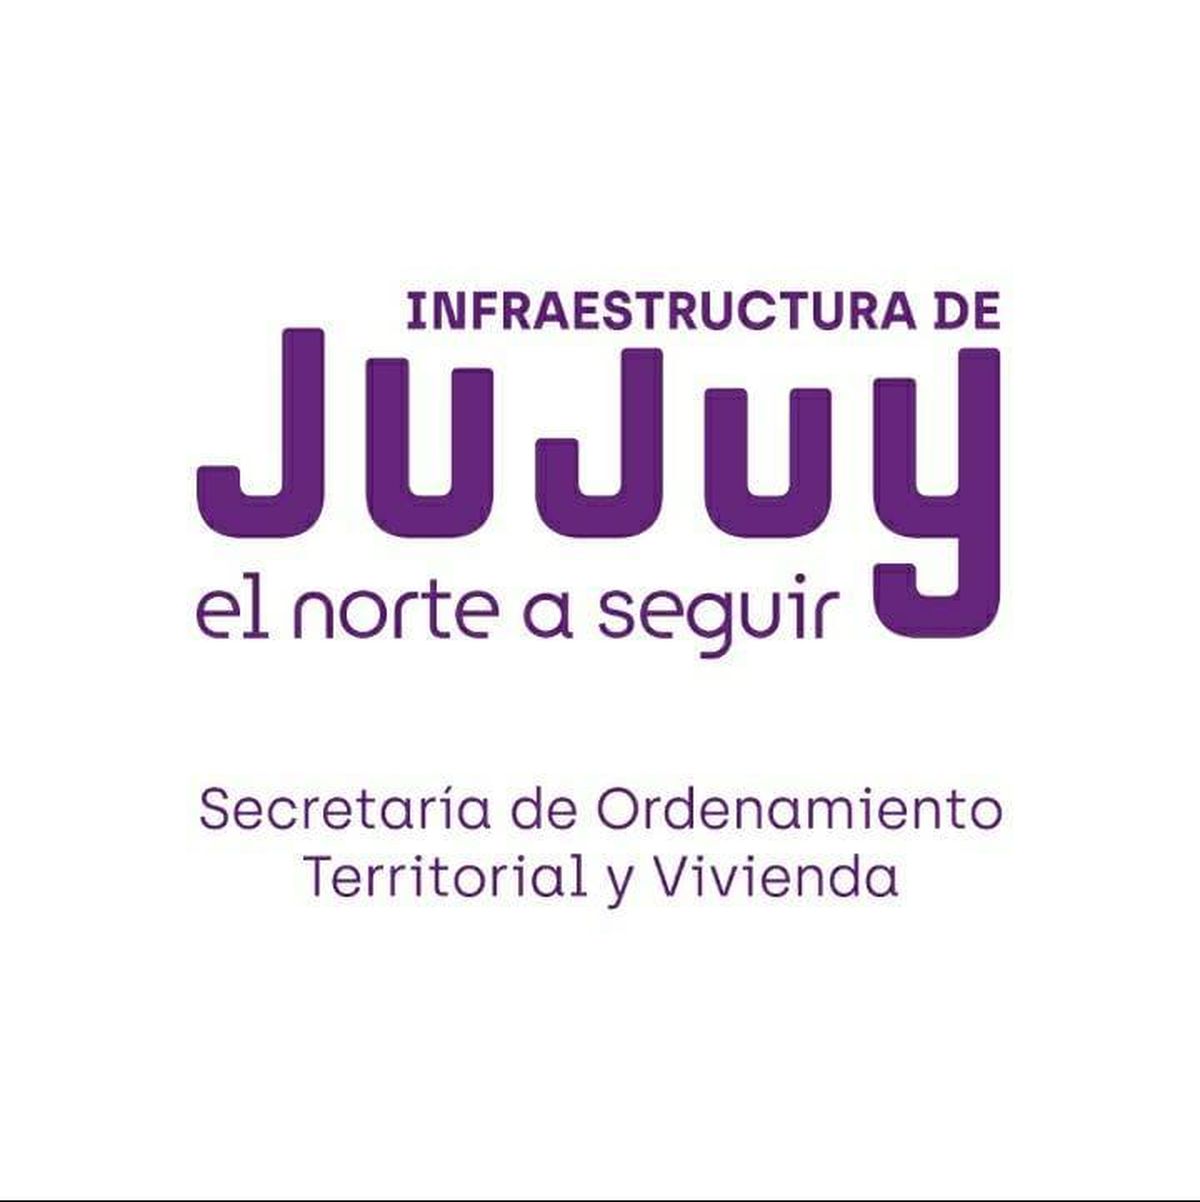 Jujuy reafirma la regularización de barrios informales